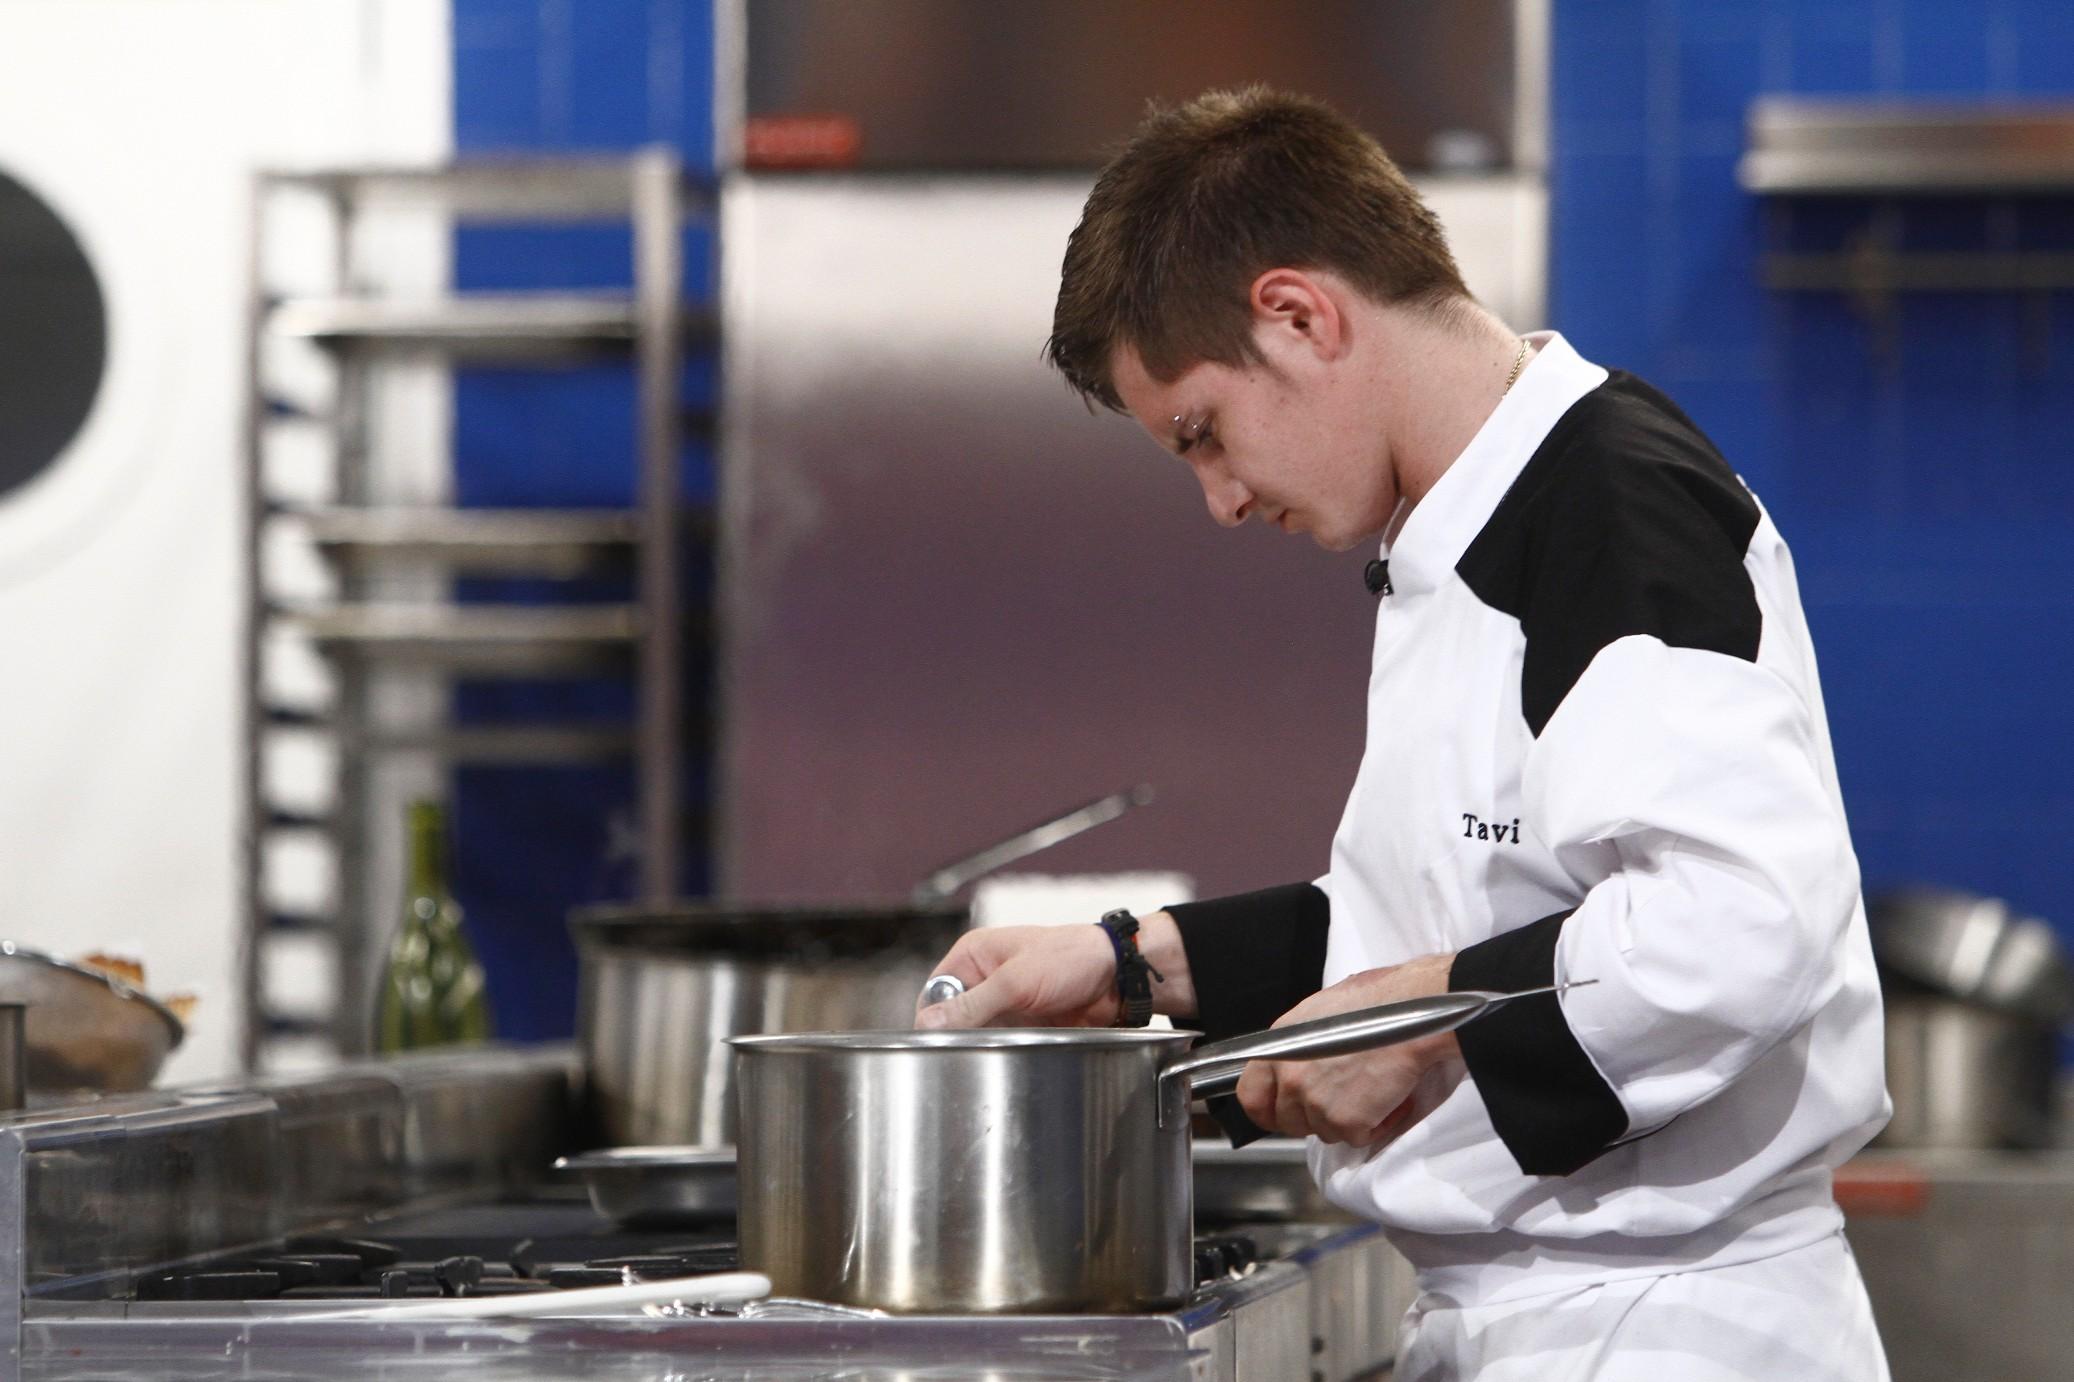 Ultimii șase concurenți se întrec în farfurii semnătură  la ”Hell’s Kitchen – Iadul Bucătarilor”